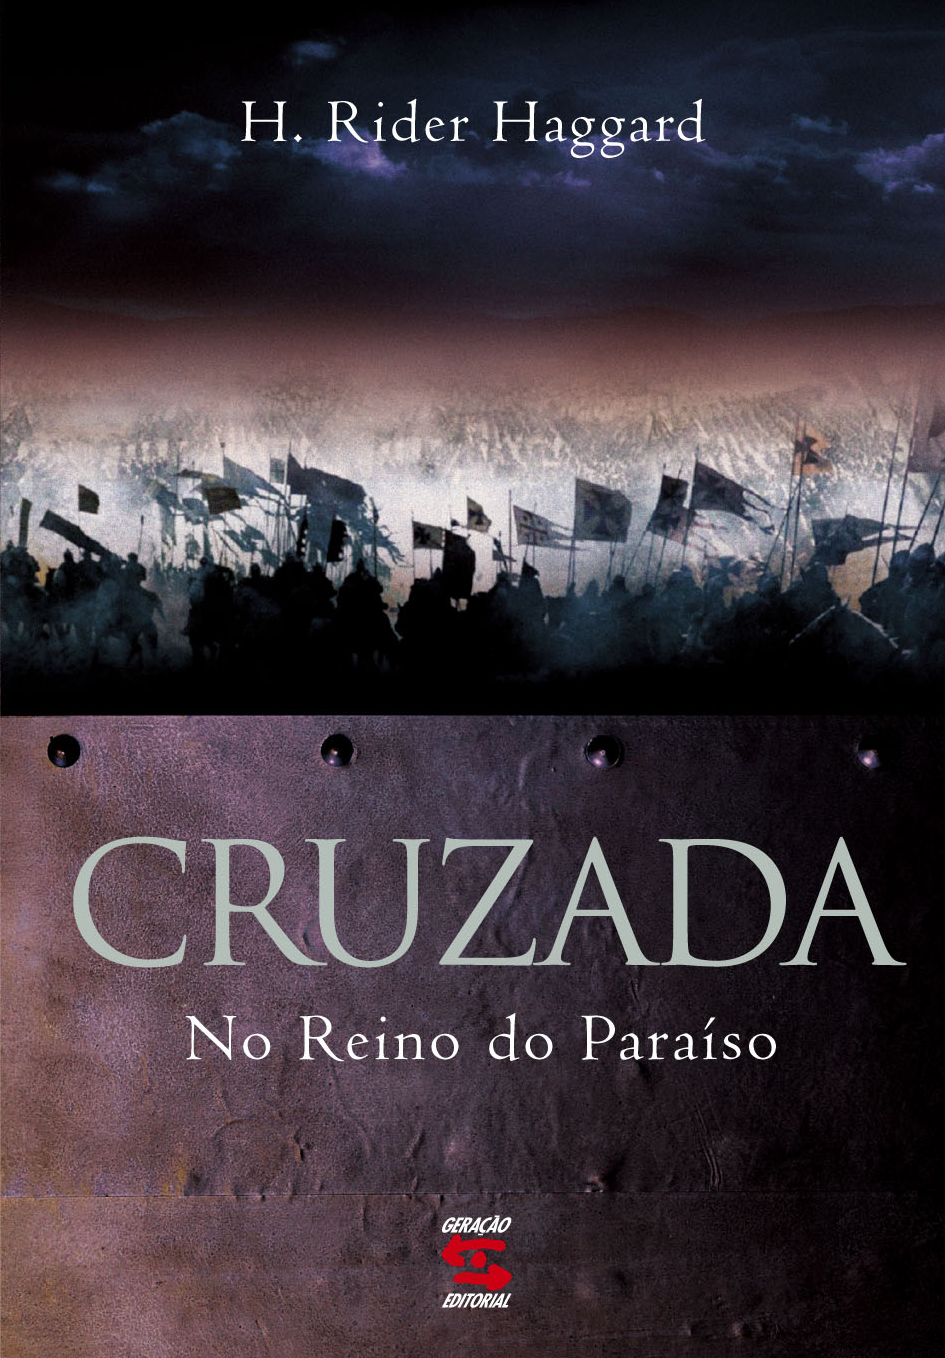 Crusada 2015